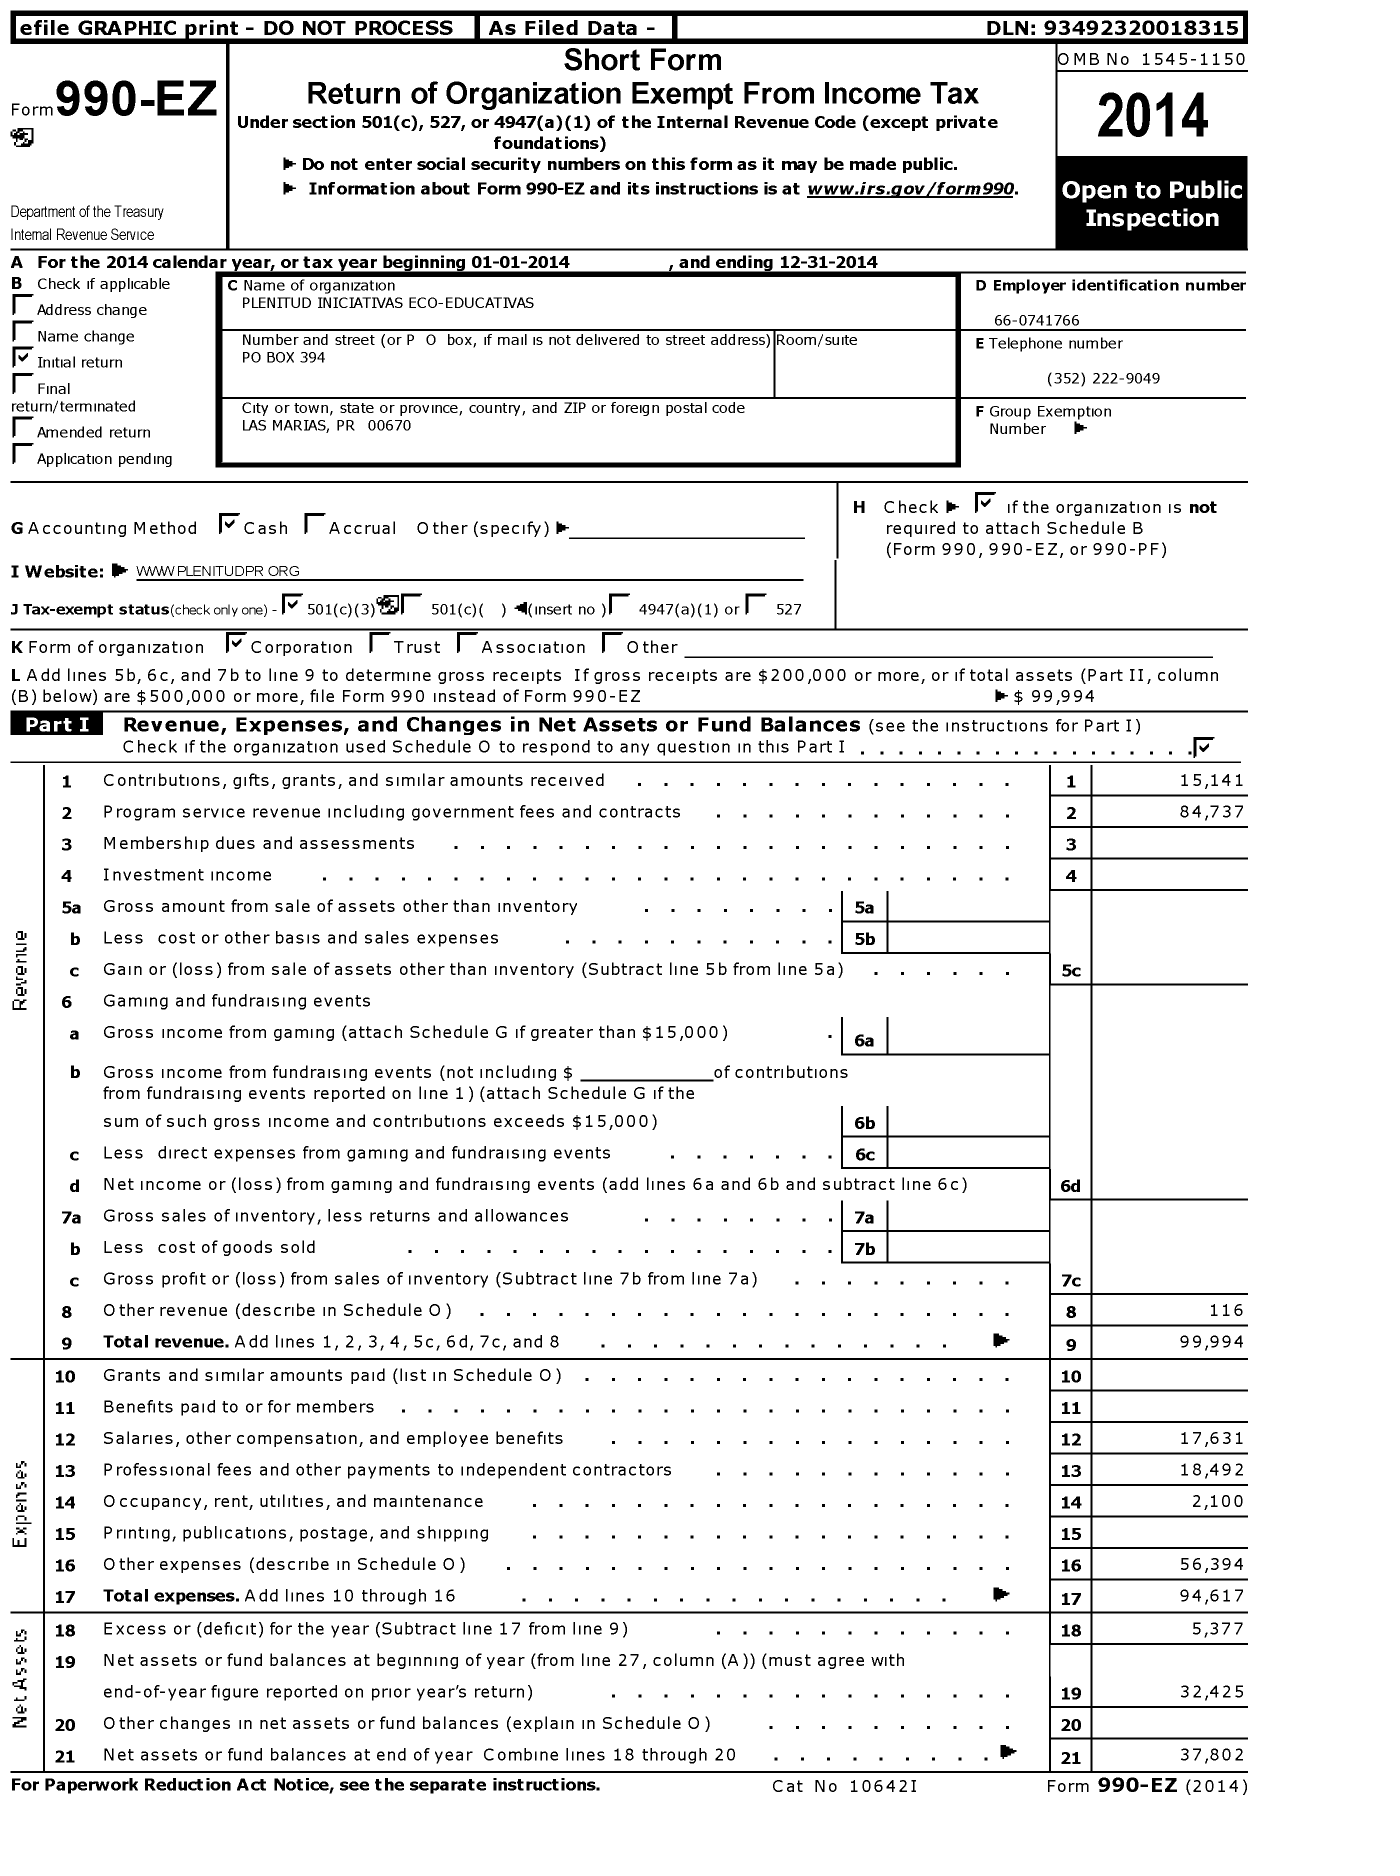 Image of first page of 2014 Form 990EZ for Plenitud Iniciativas Ecoeducativas